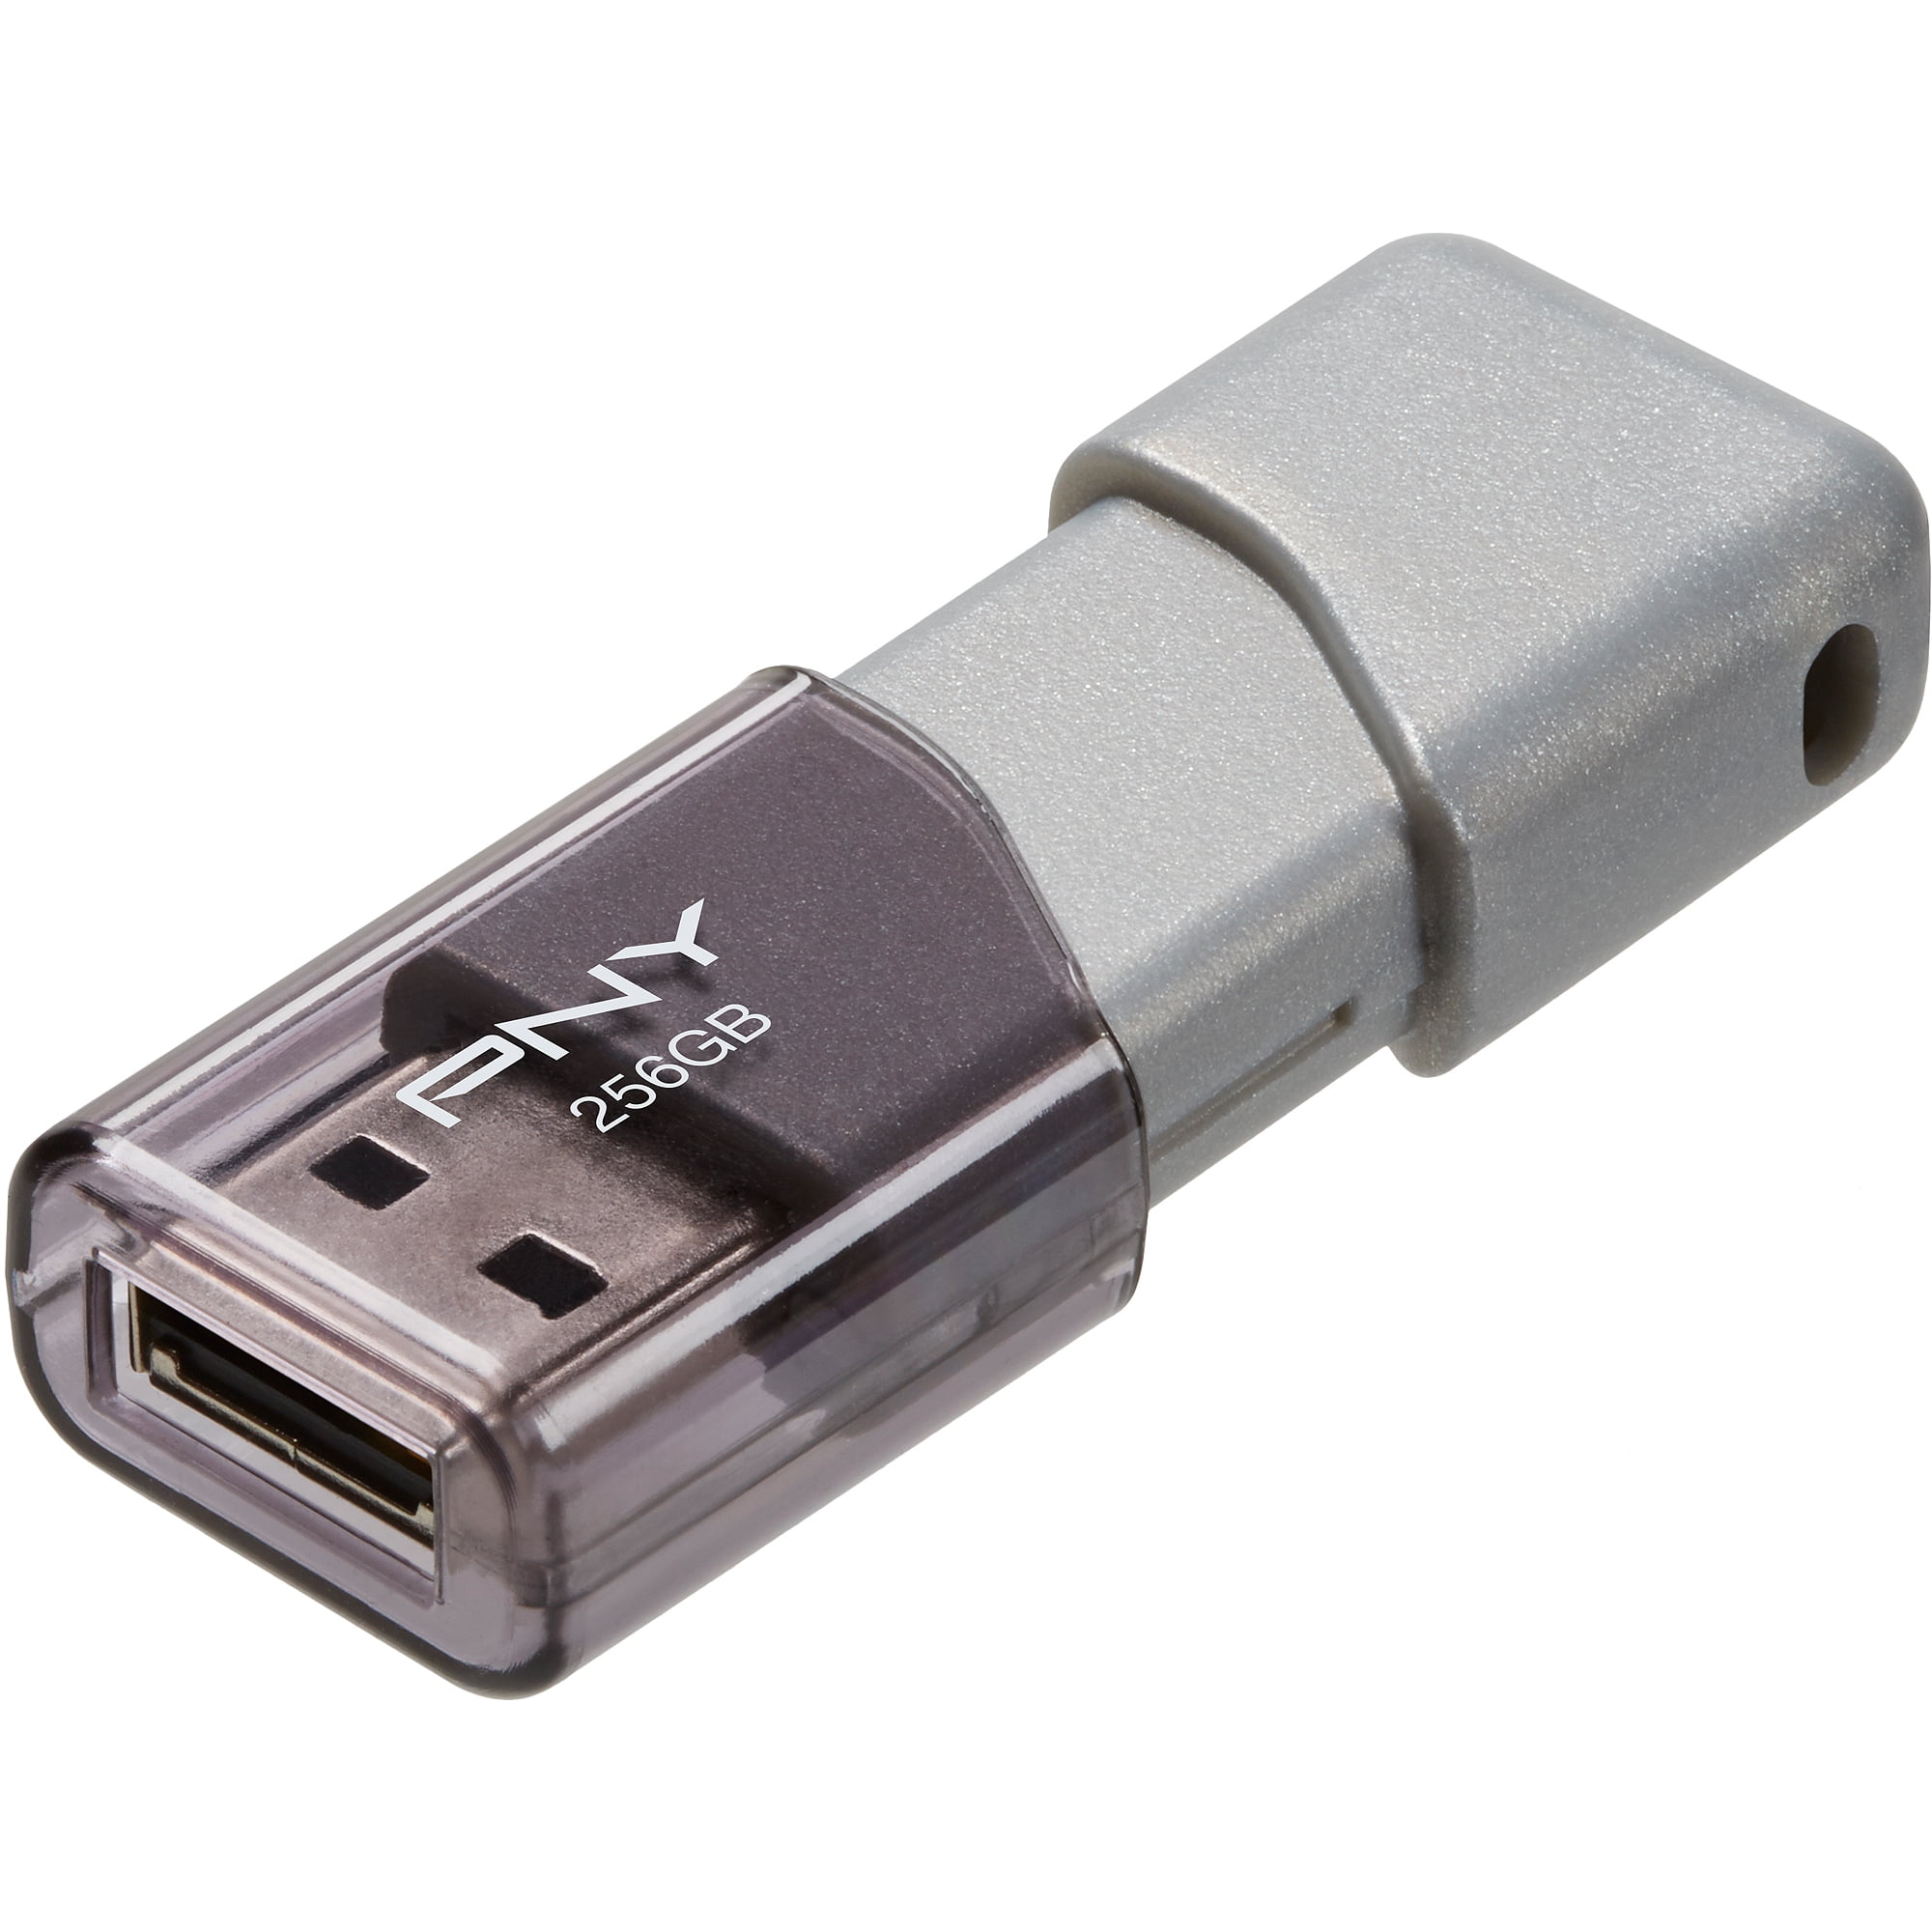 PNY 128GB Turbo Attache 3 USB 3.0 Drive - Walmart.com